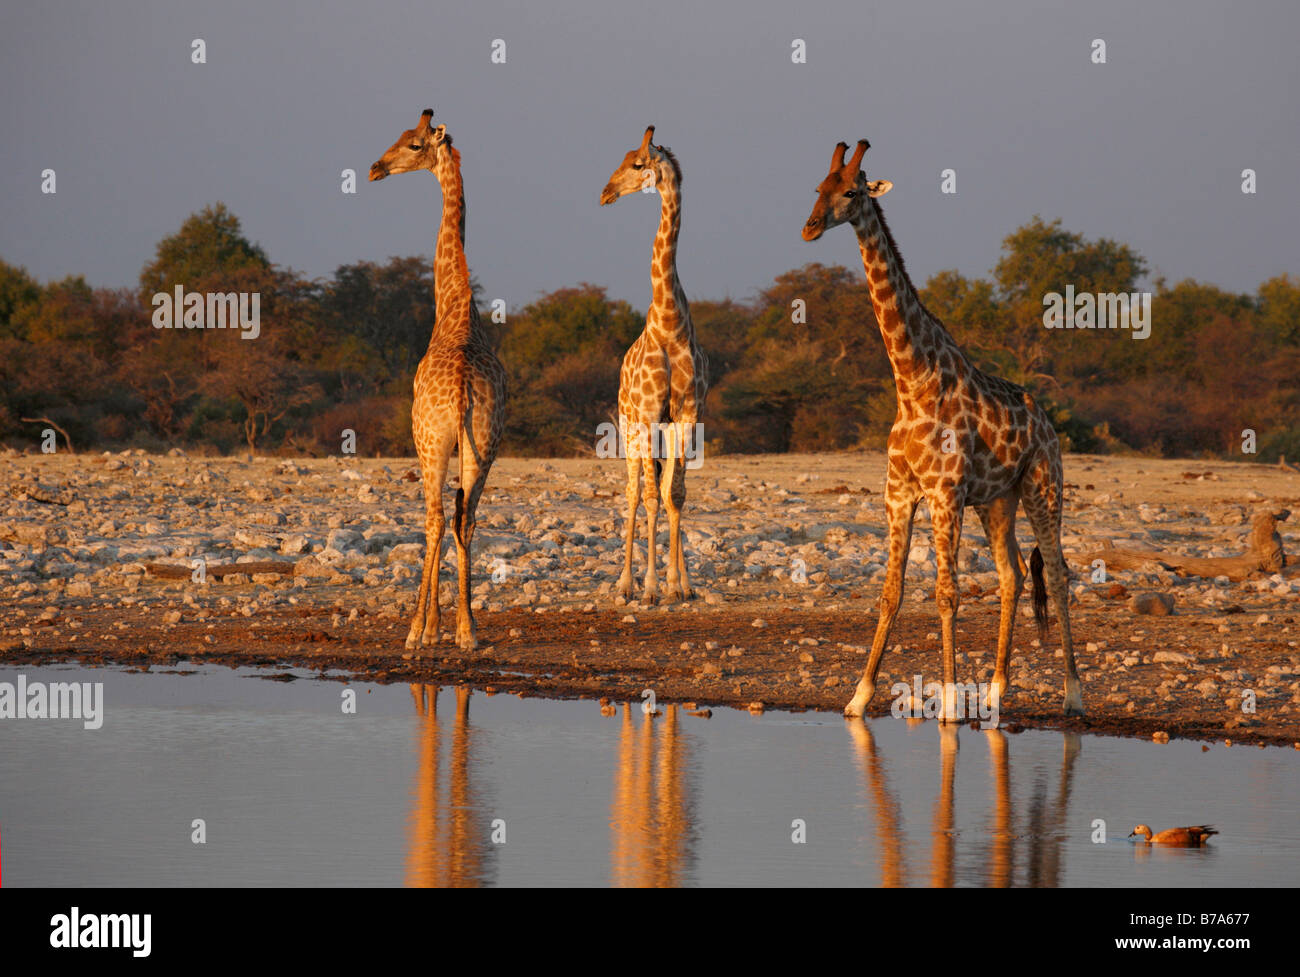 Girafe troupeau à un étang dans un éclairage chaleureux Banque D'Images